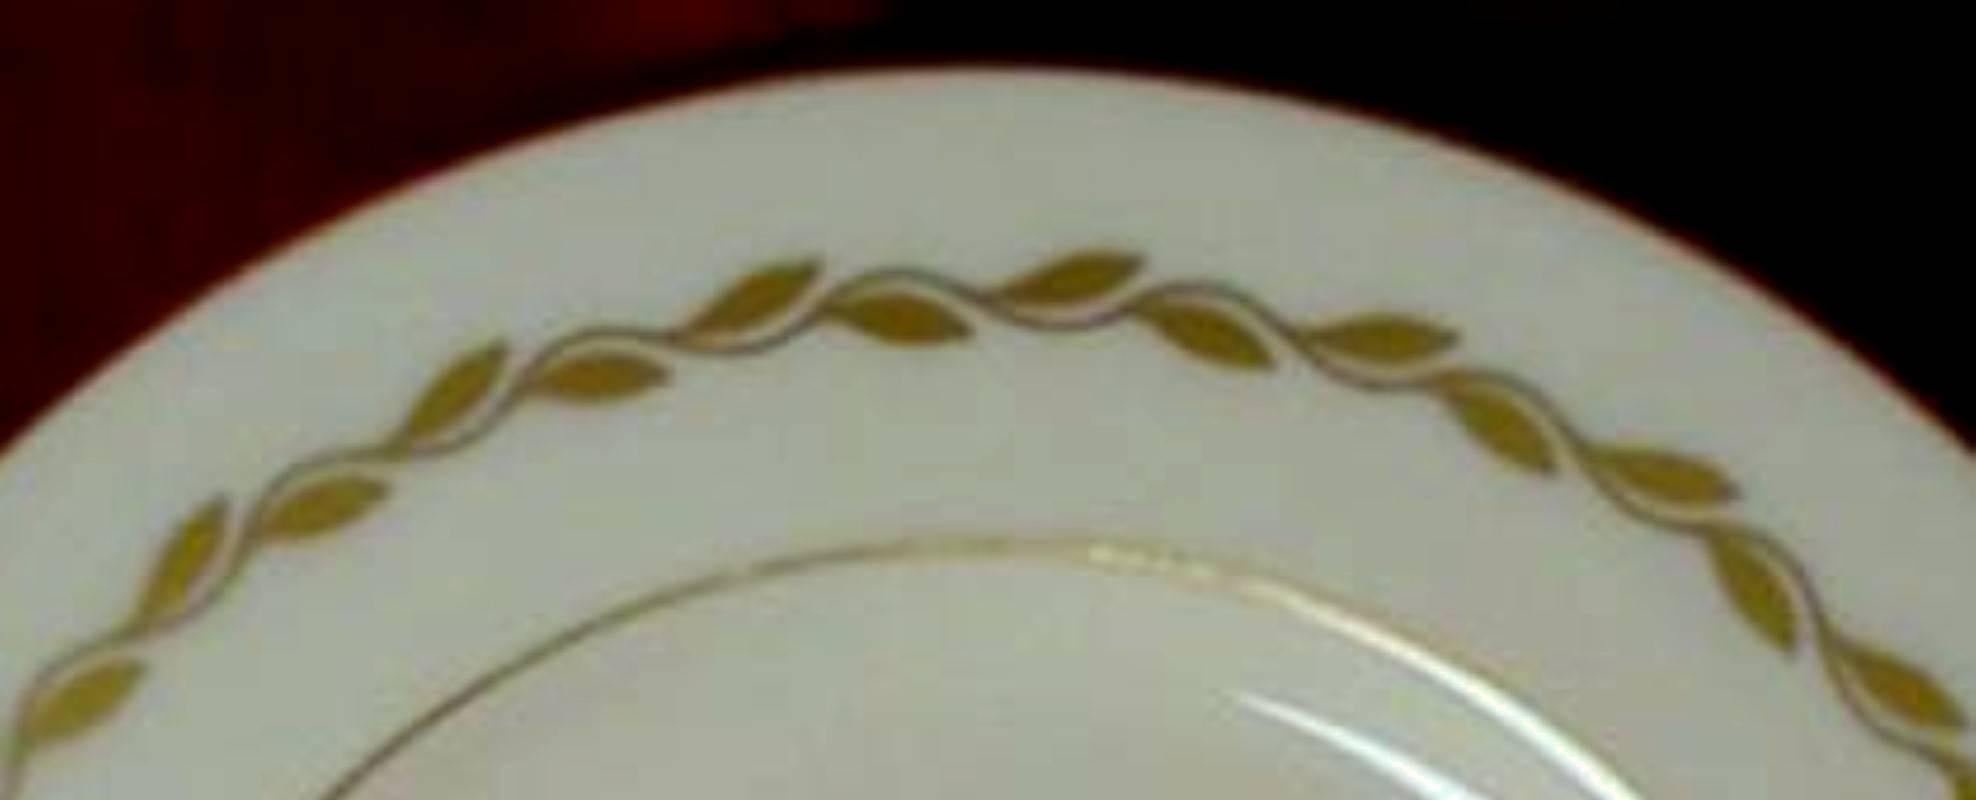 meito china pattern identification